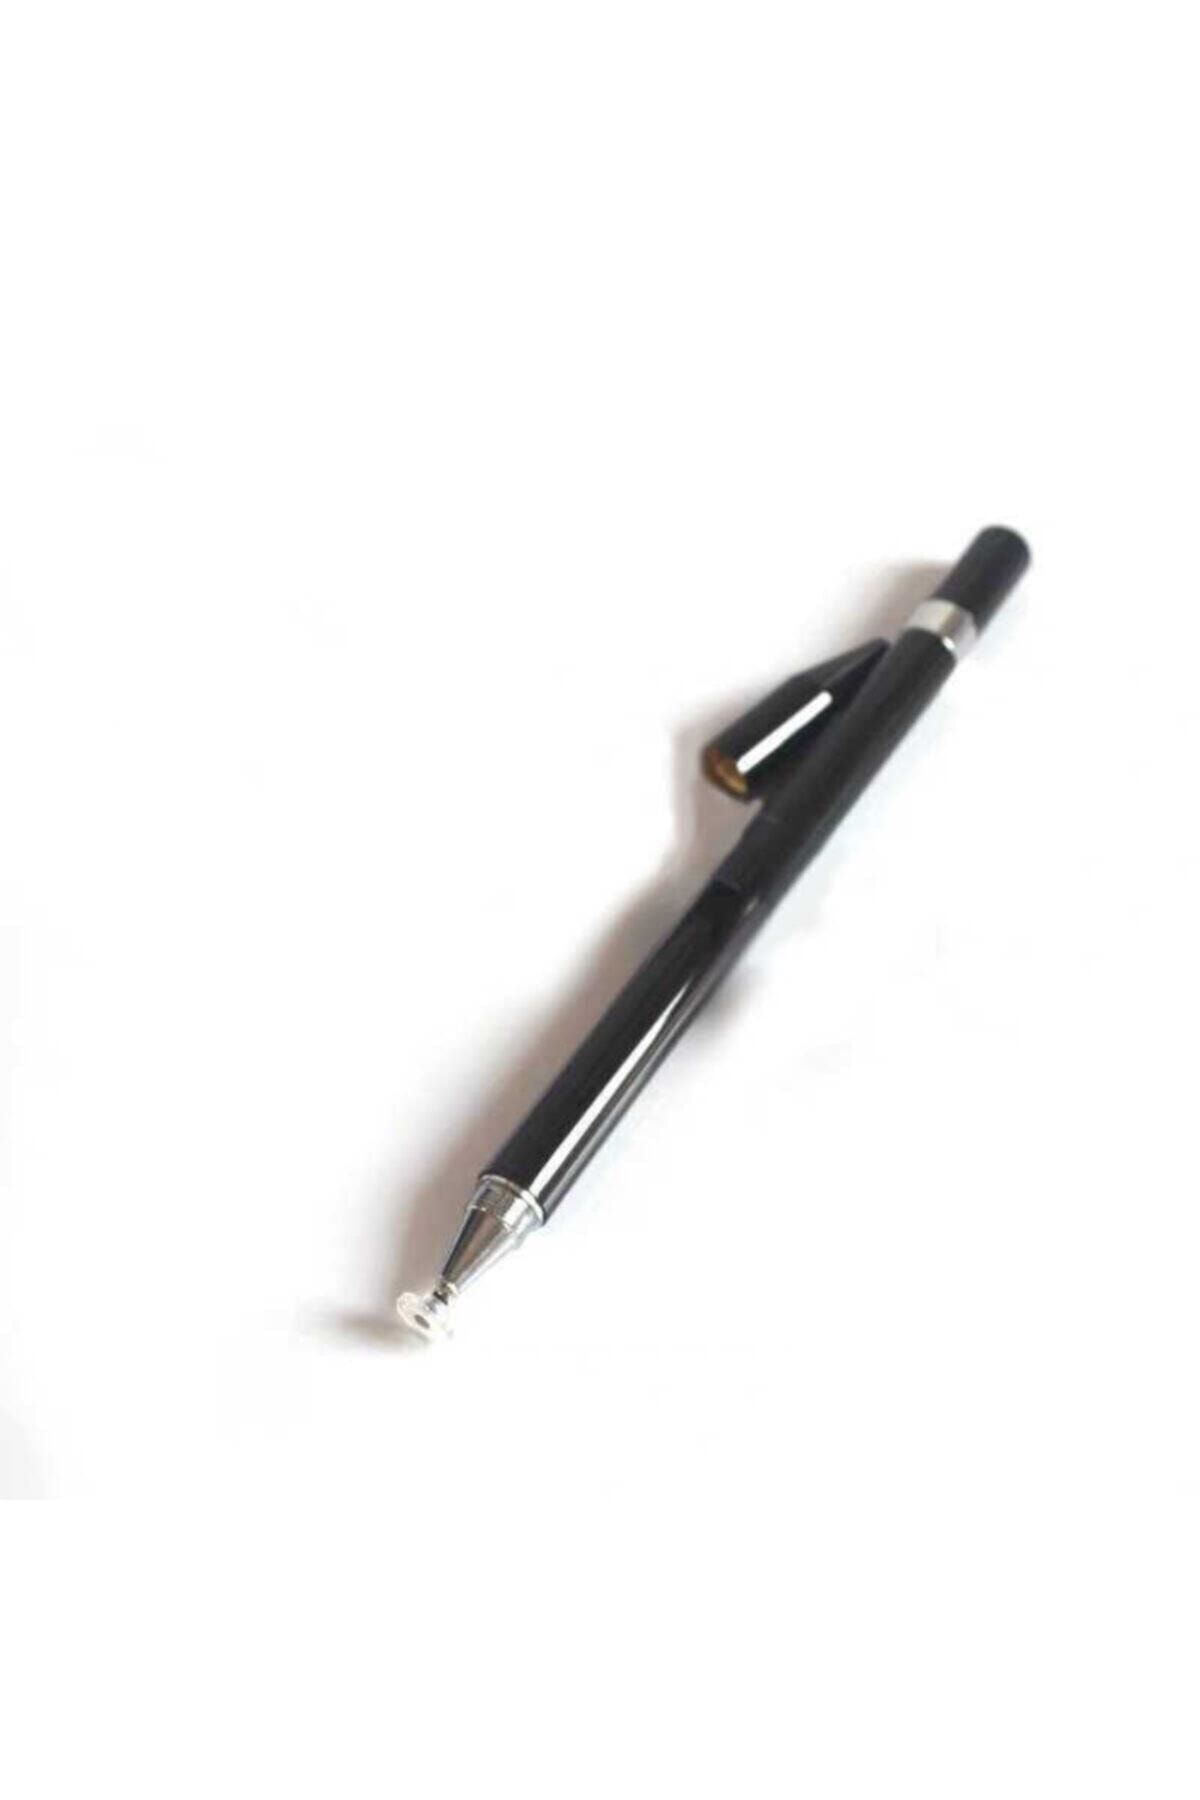 Fibaks Dokunmatik Kalem Tüm Cihazlara Uyumlu Tablet Telefon Için Çizim & Yazı Kalemi 2 In 1 Disk Uçlu